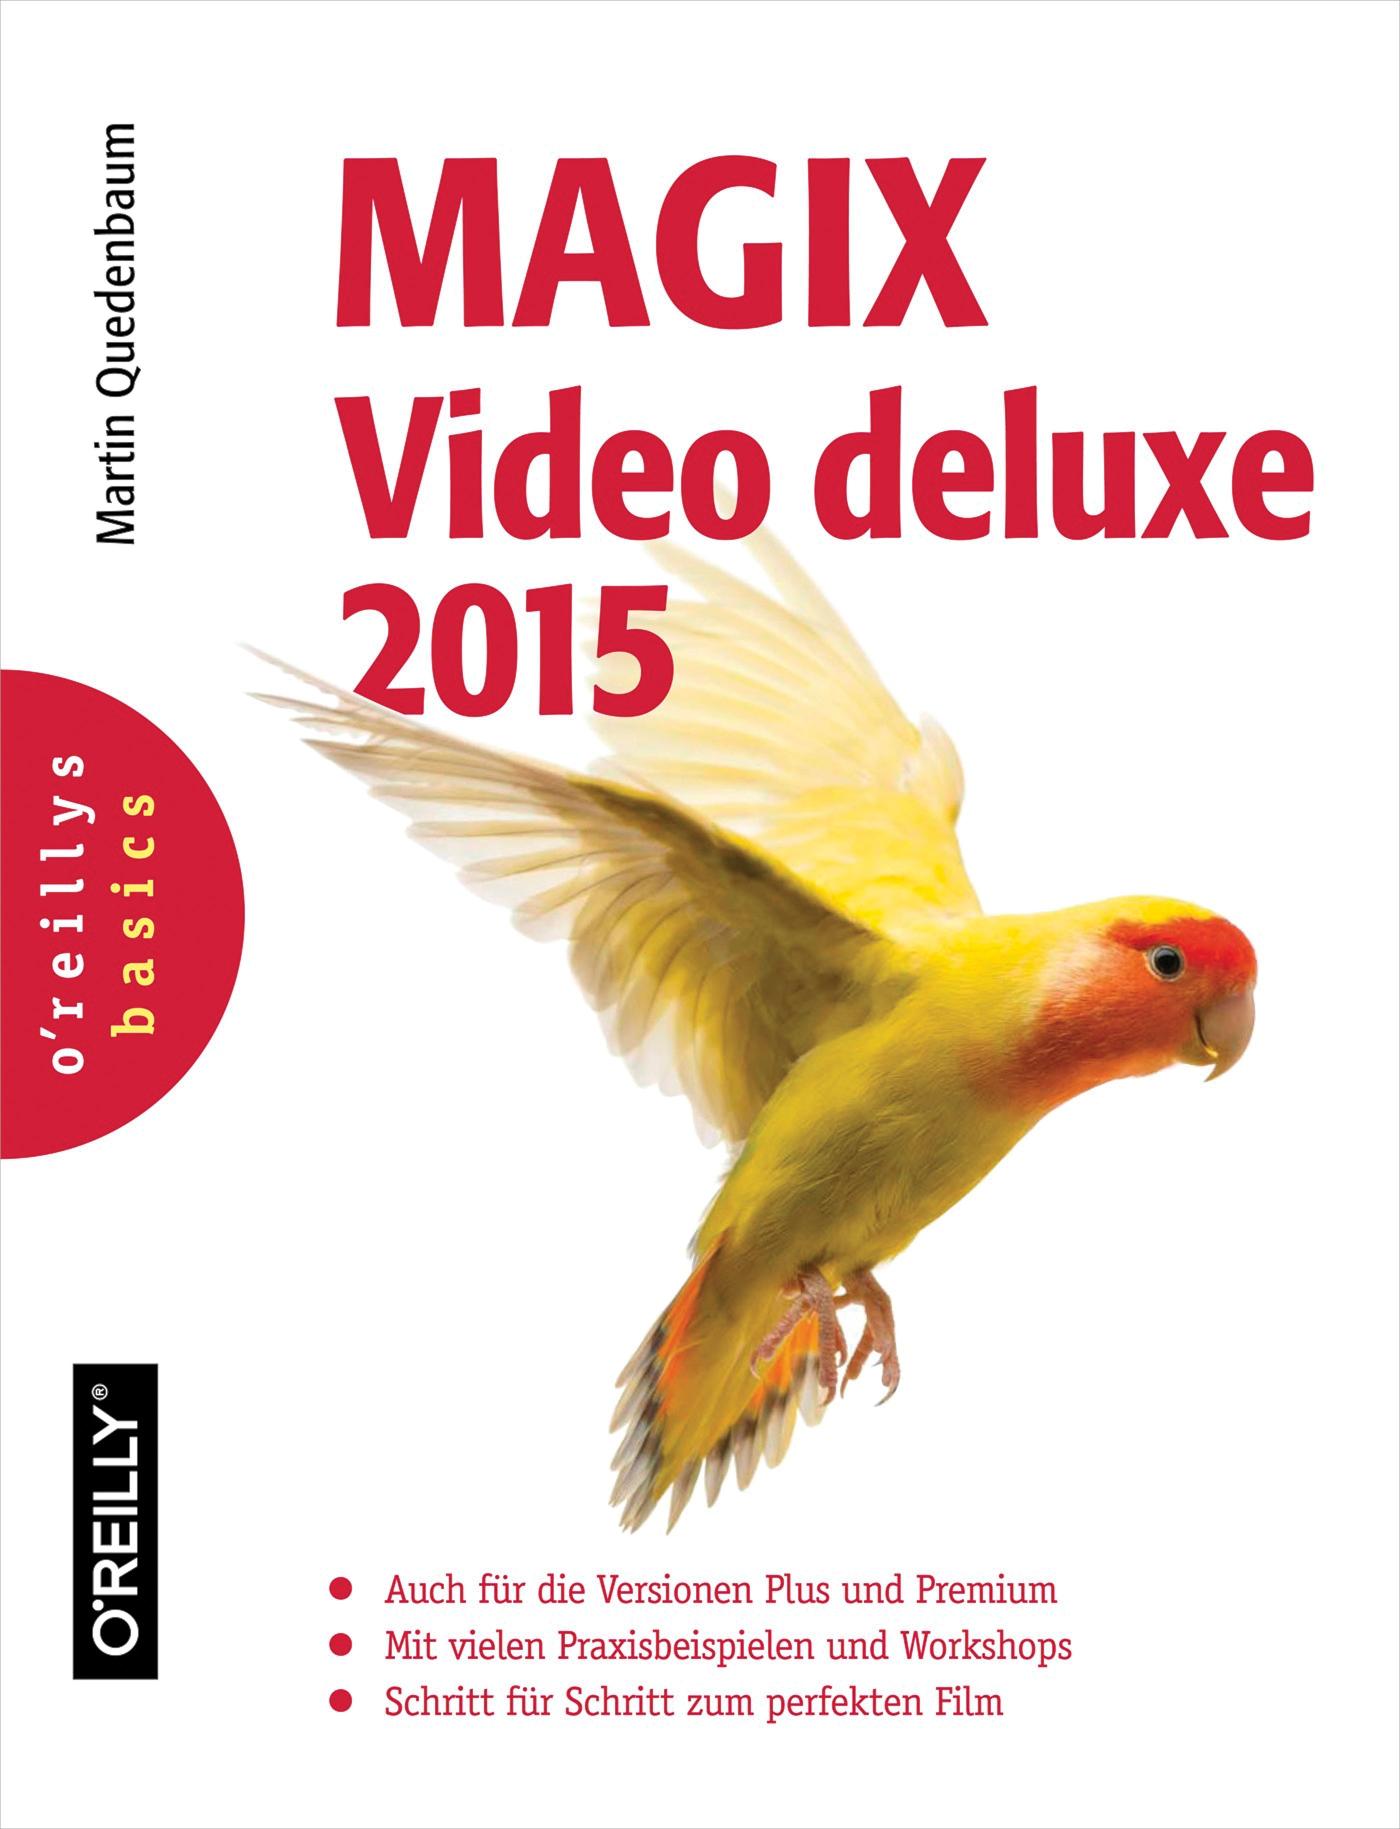 MAGIX Video deluxe 2015 